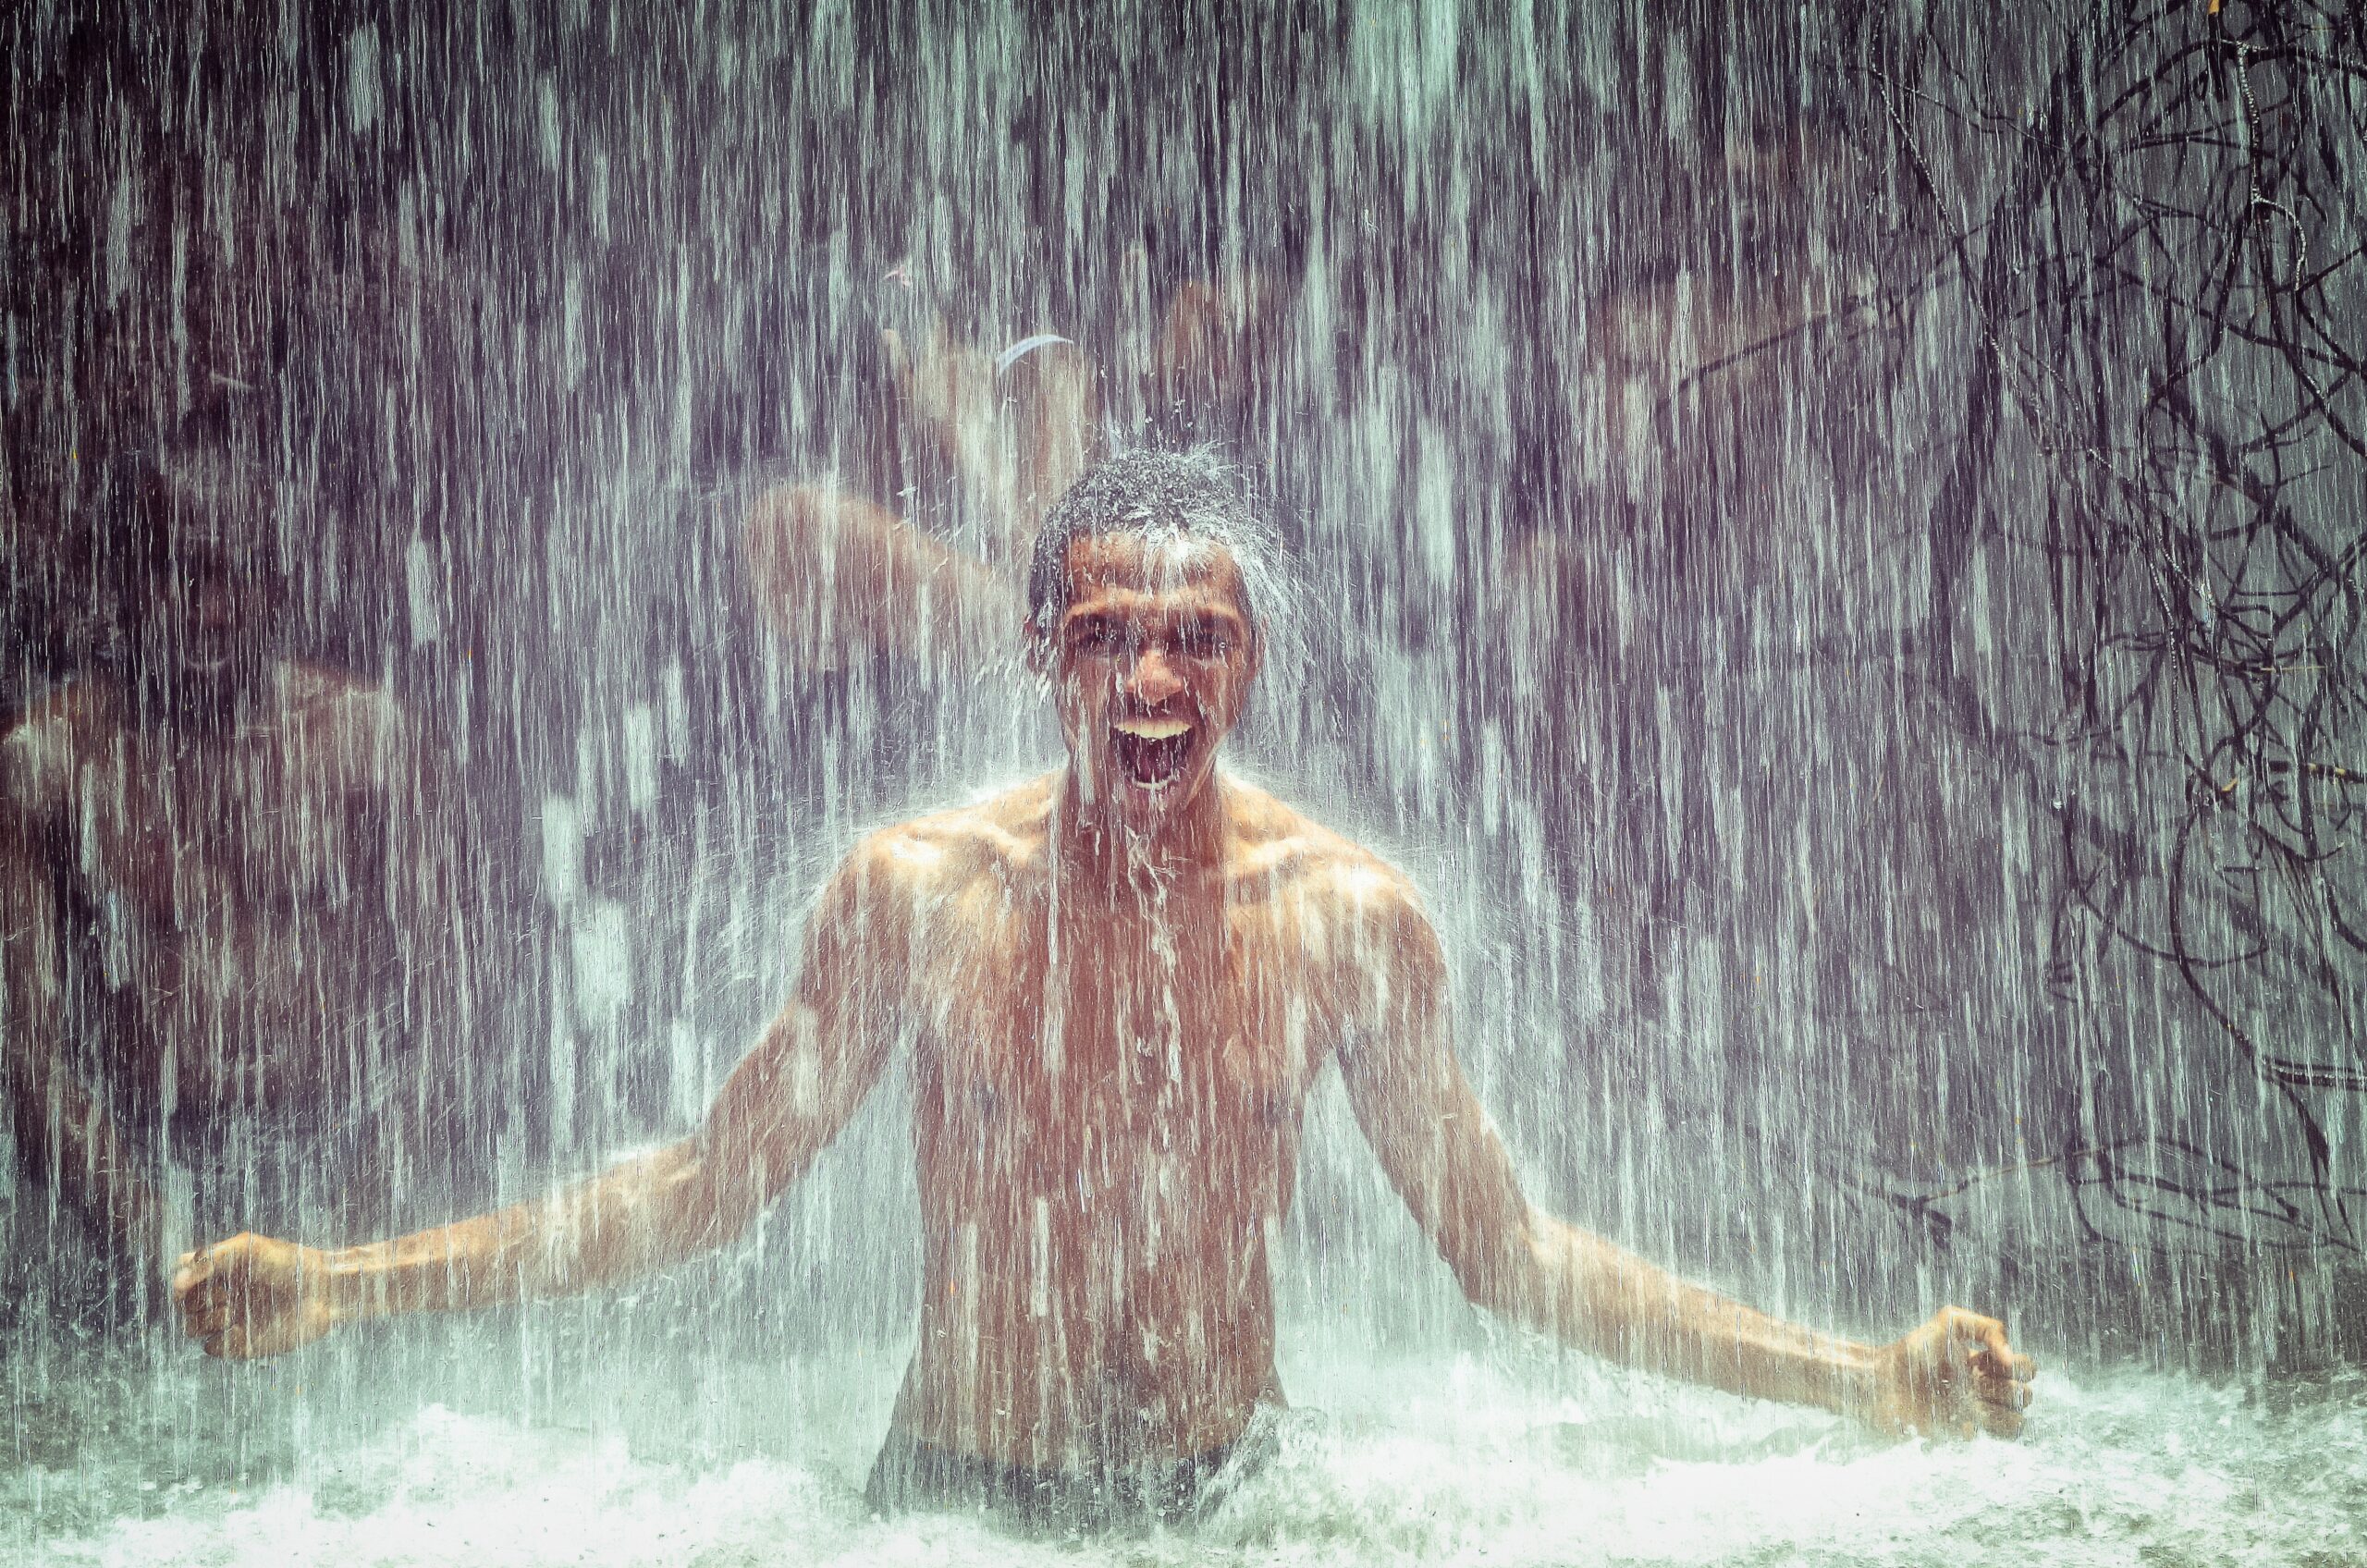 Männliche PoC duscht freudestrahlend im Wasser eines Wasserfalls. In Hintergrund sind verschwommen weitere Personen zu erkennen.